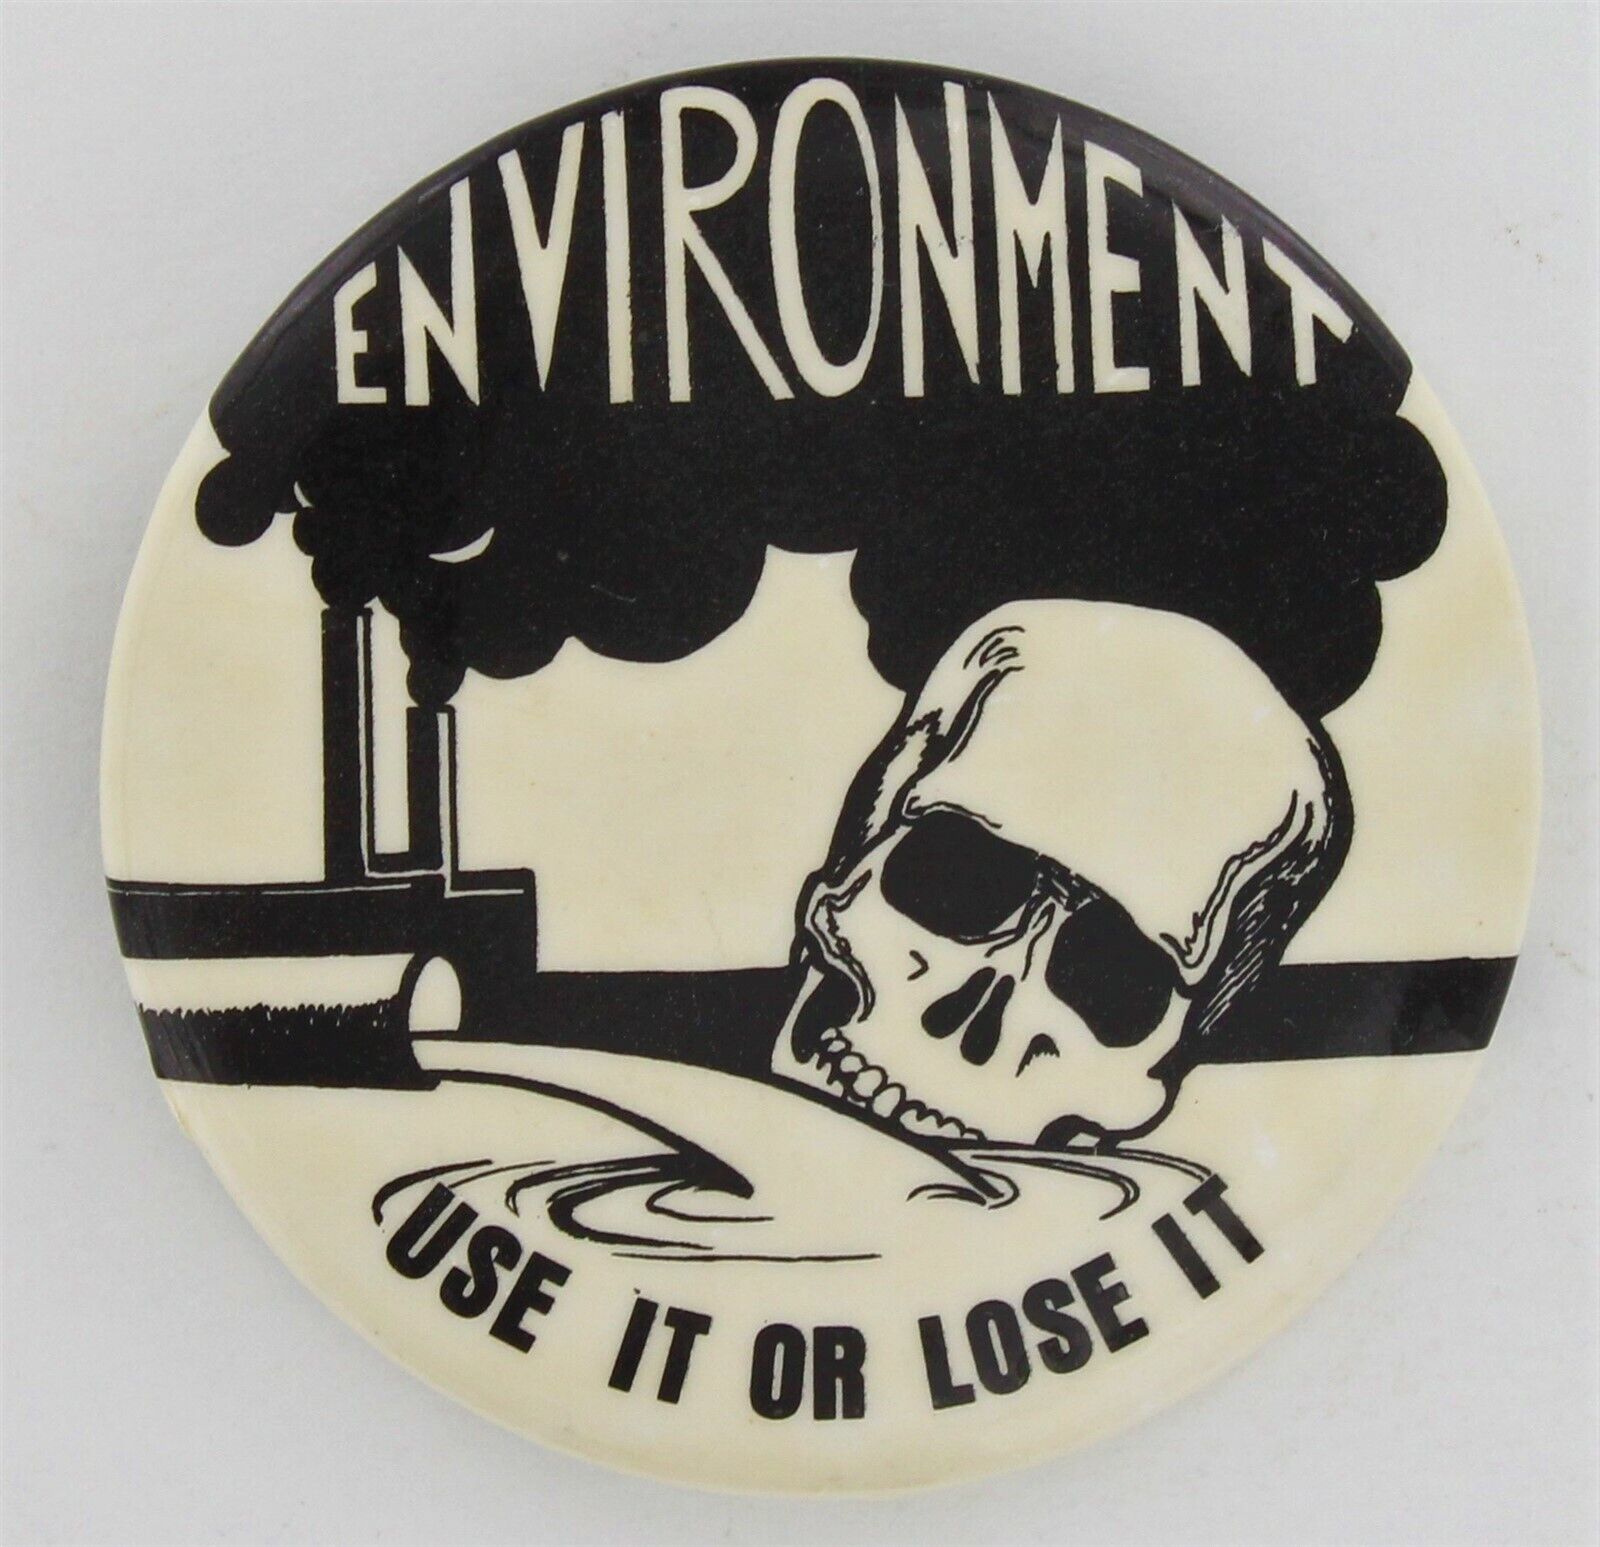 Vintage Environment Button 1970 Pollution Death Extinction Skull Bones Die 1027